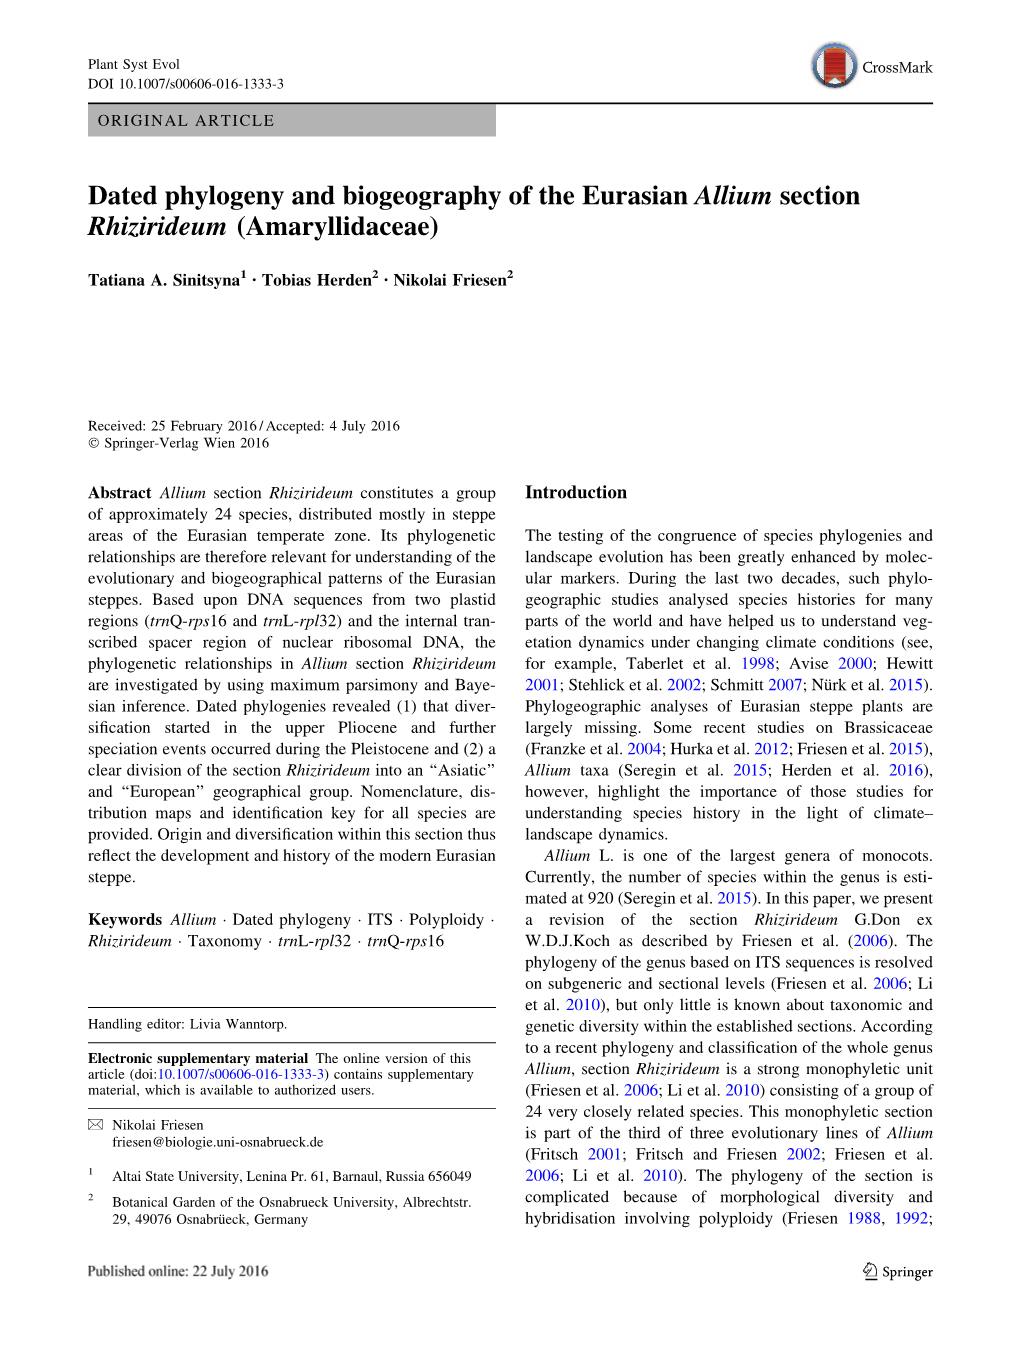 Dated Phylogeny and Biogeography of the Eurasian Allium Section Rhizirideum (Amaryllidaceae)